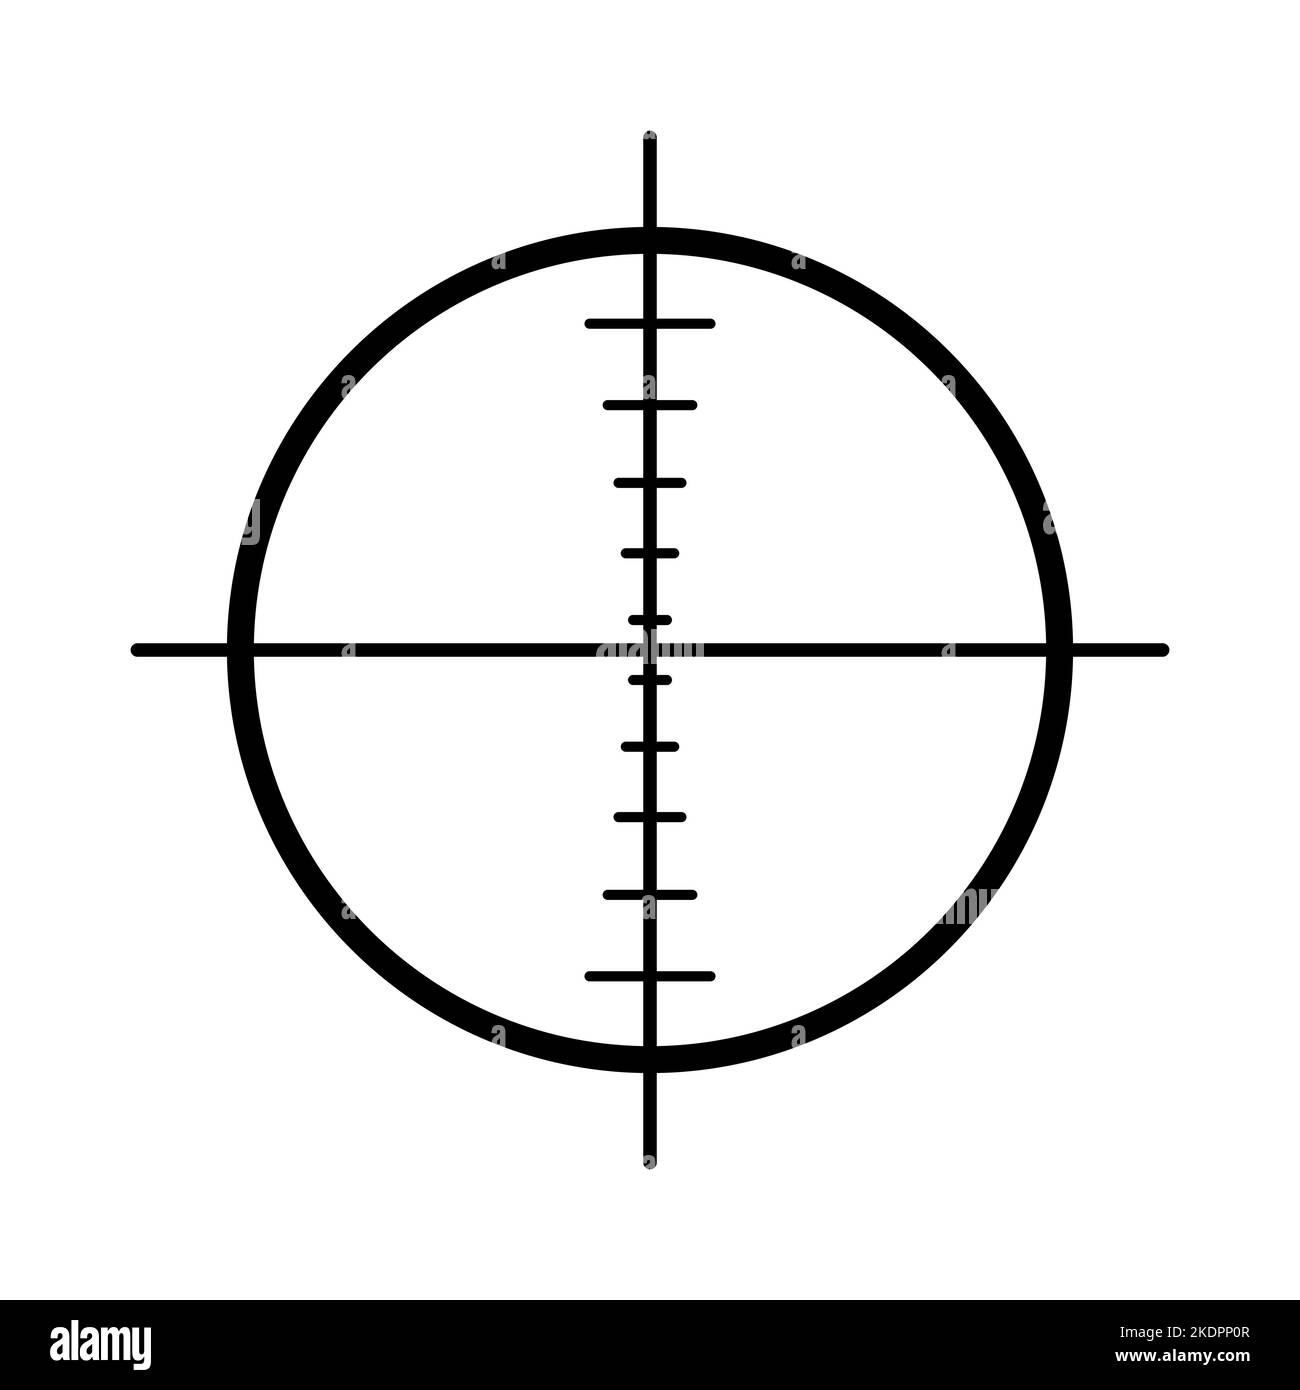 Zielsymbol. Schwarzes Zielsymbol auf weißem Hintergrund. Vektorgrafik. Symbol für lineares Ziel Stock Vektor